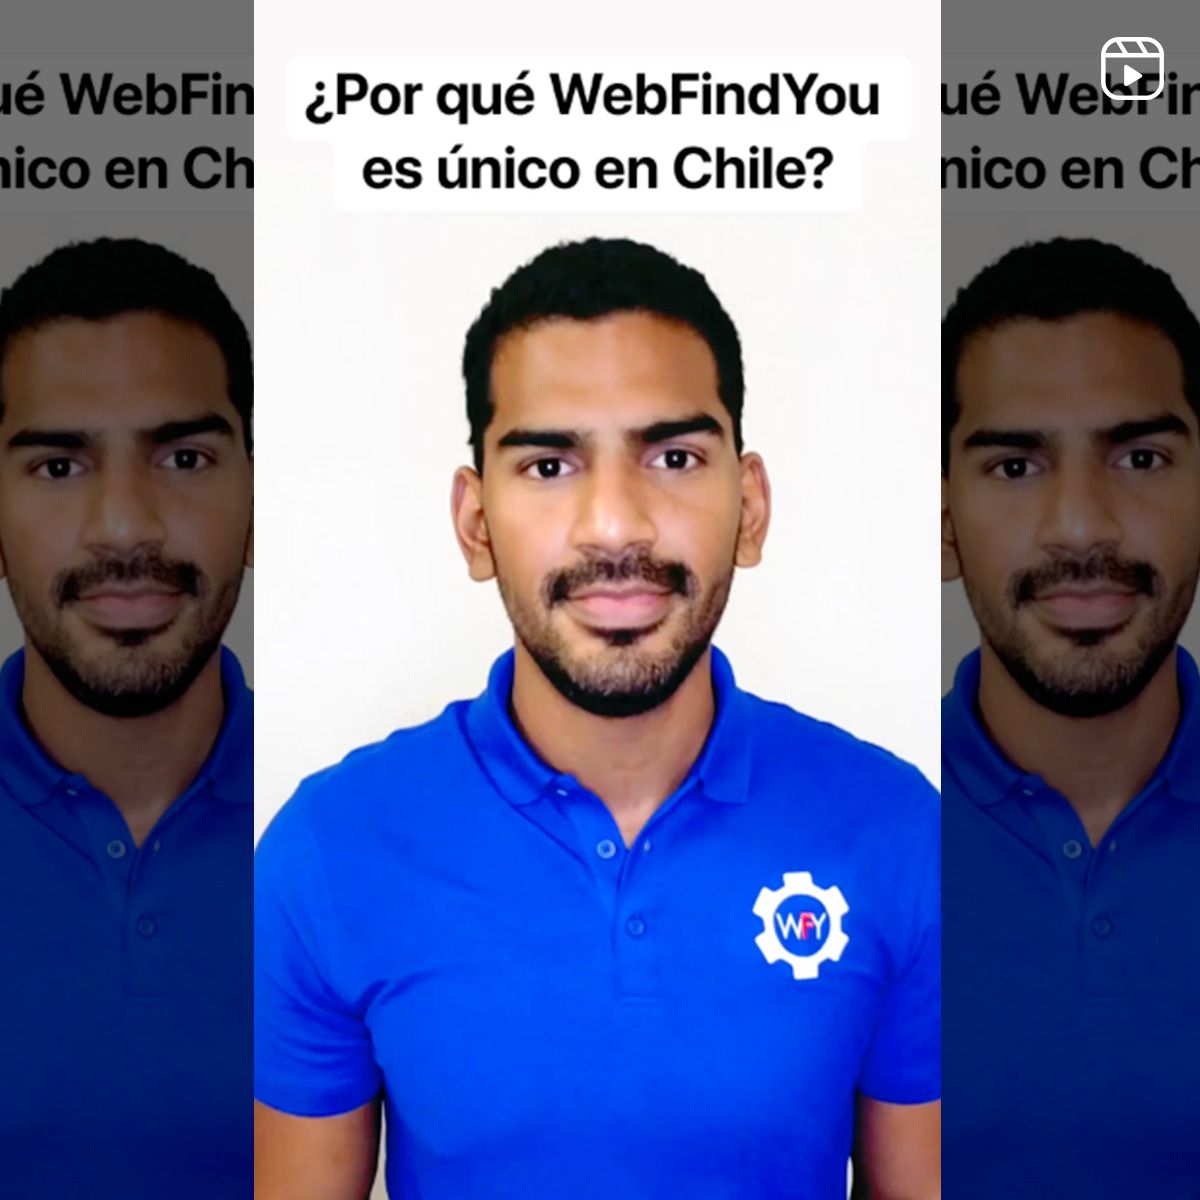 ¿Por qué WebFindYou es Único en Chile?